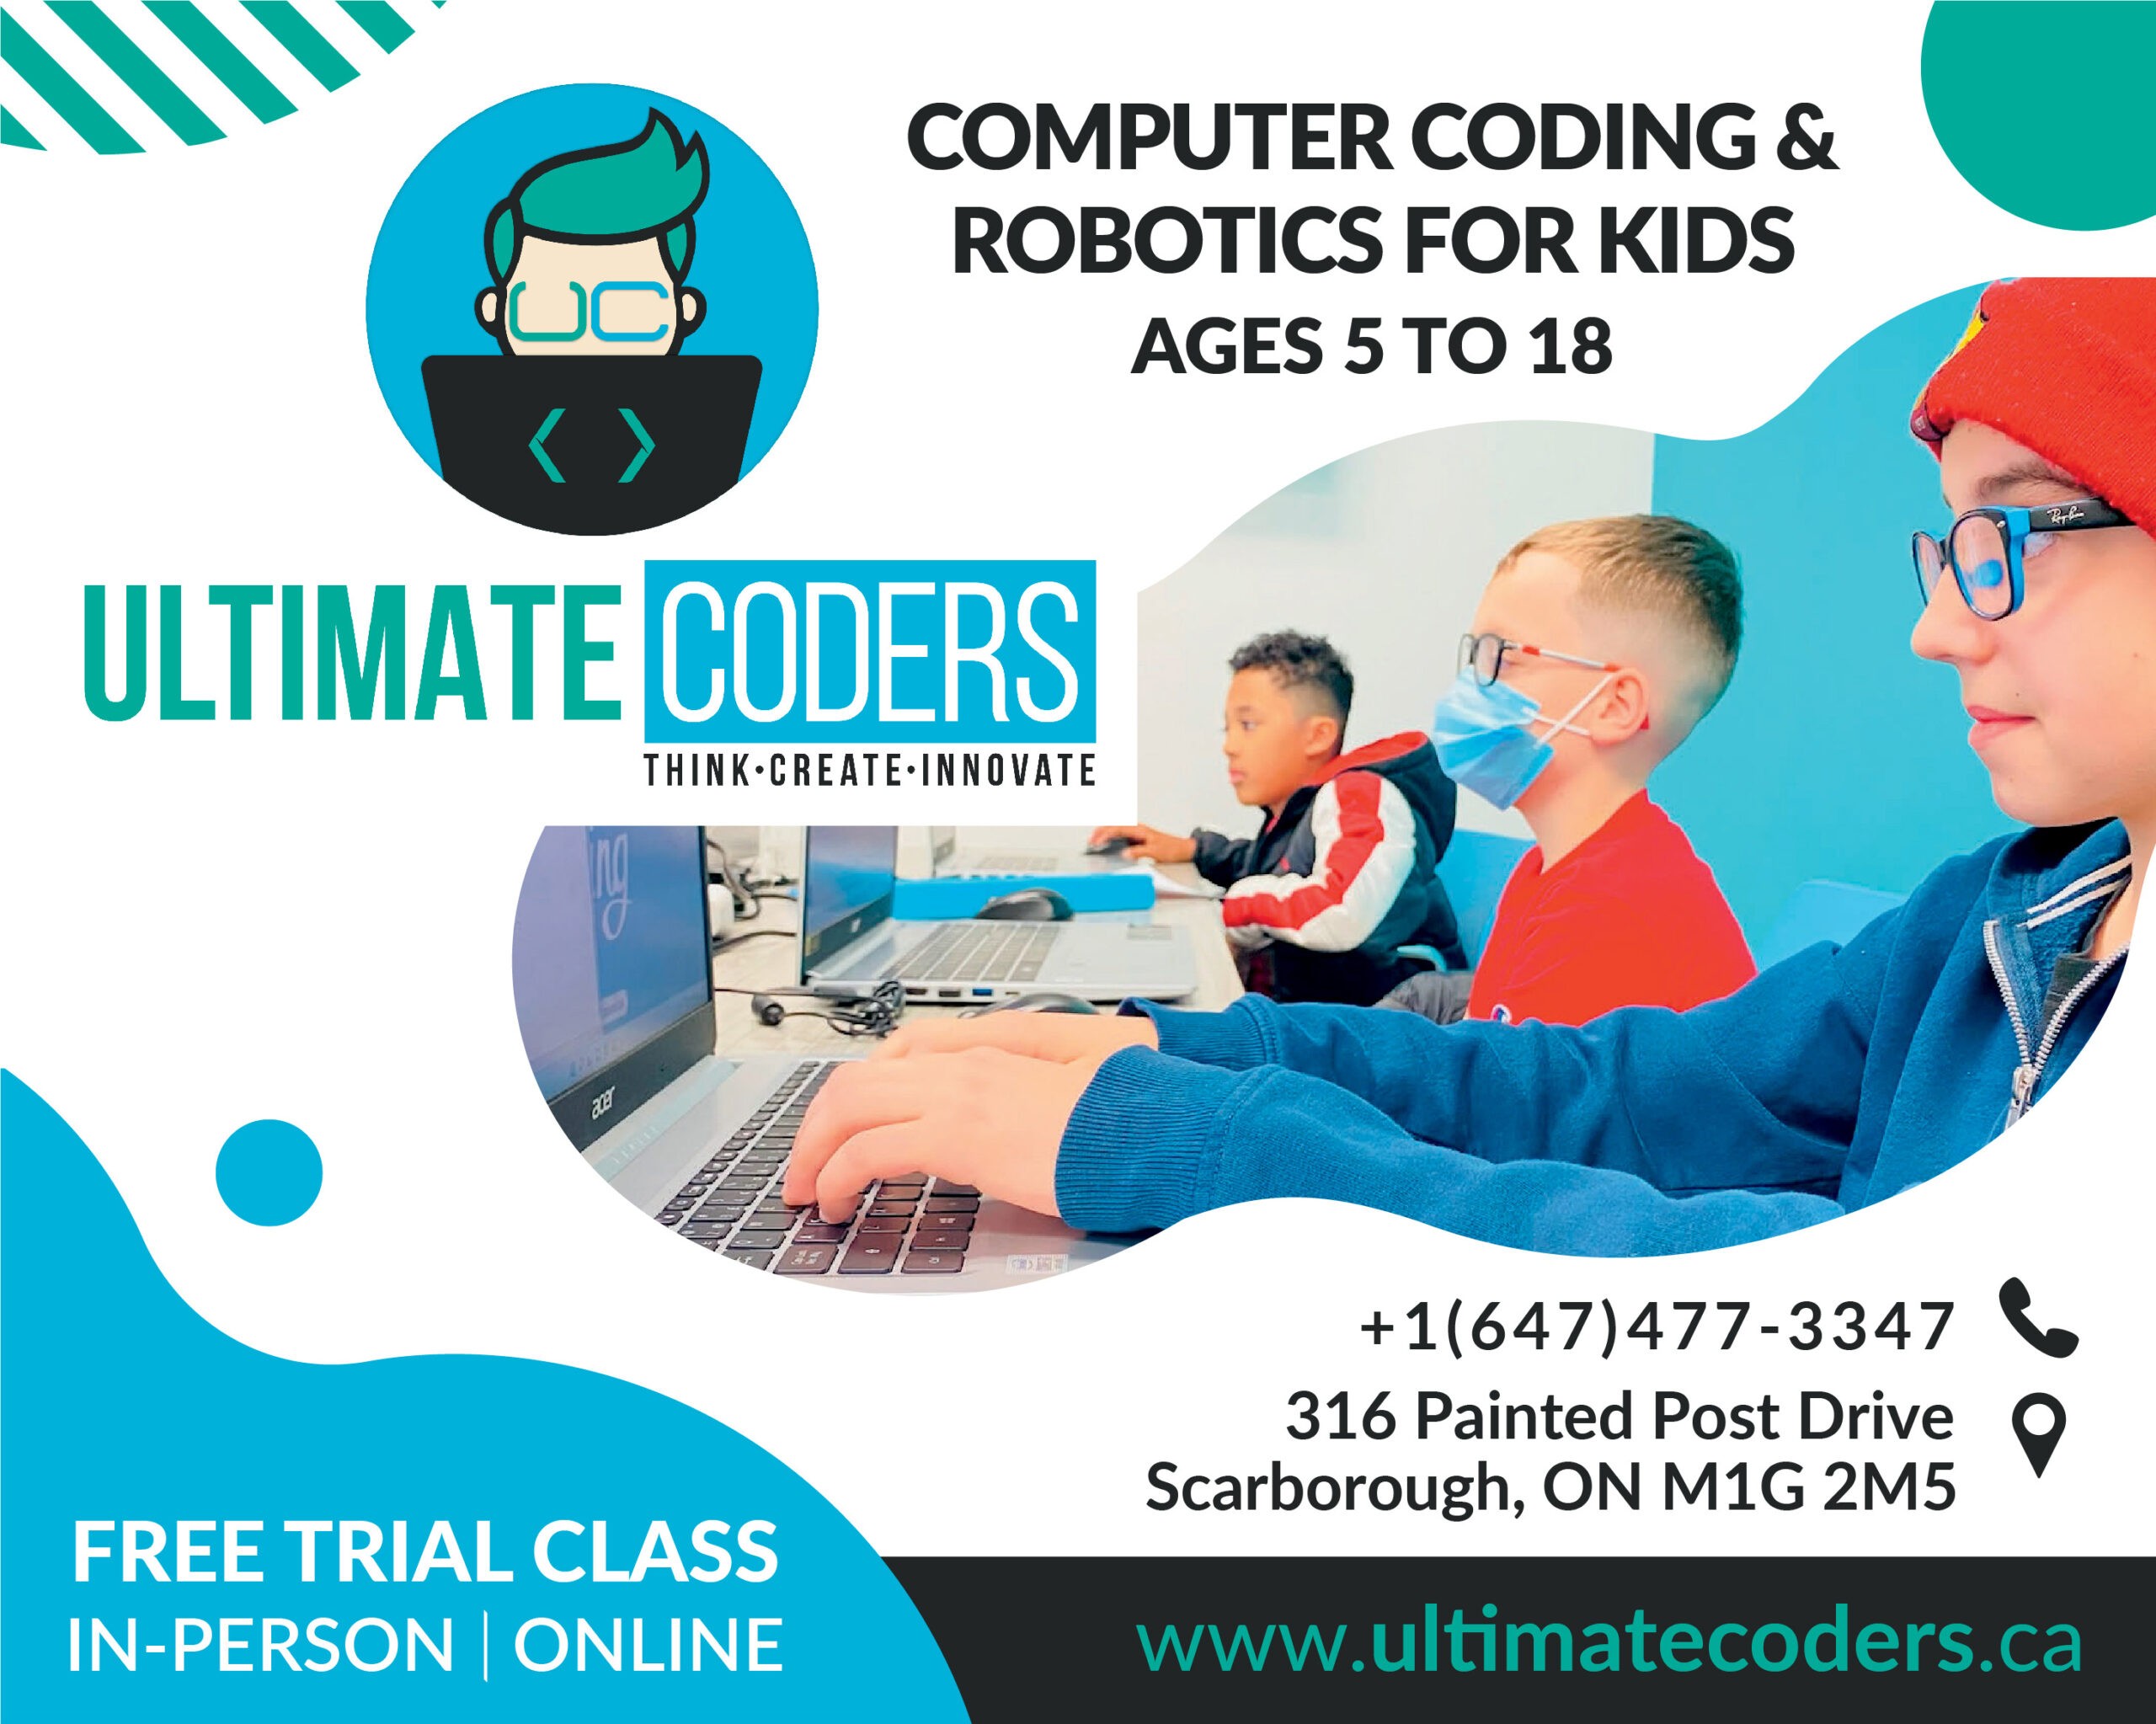 Ultimate Coders